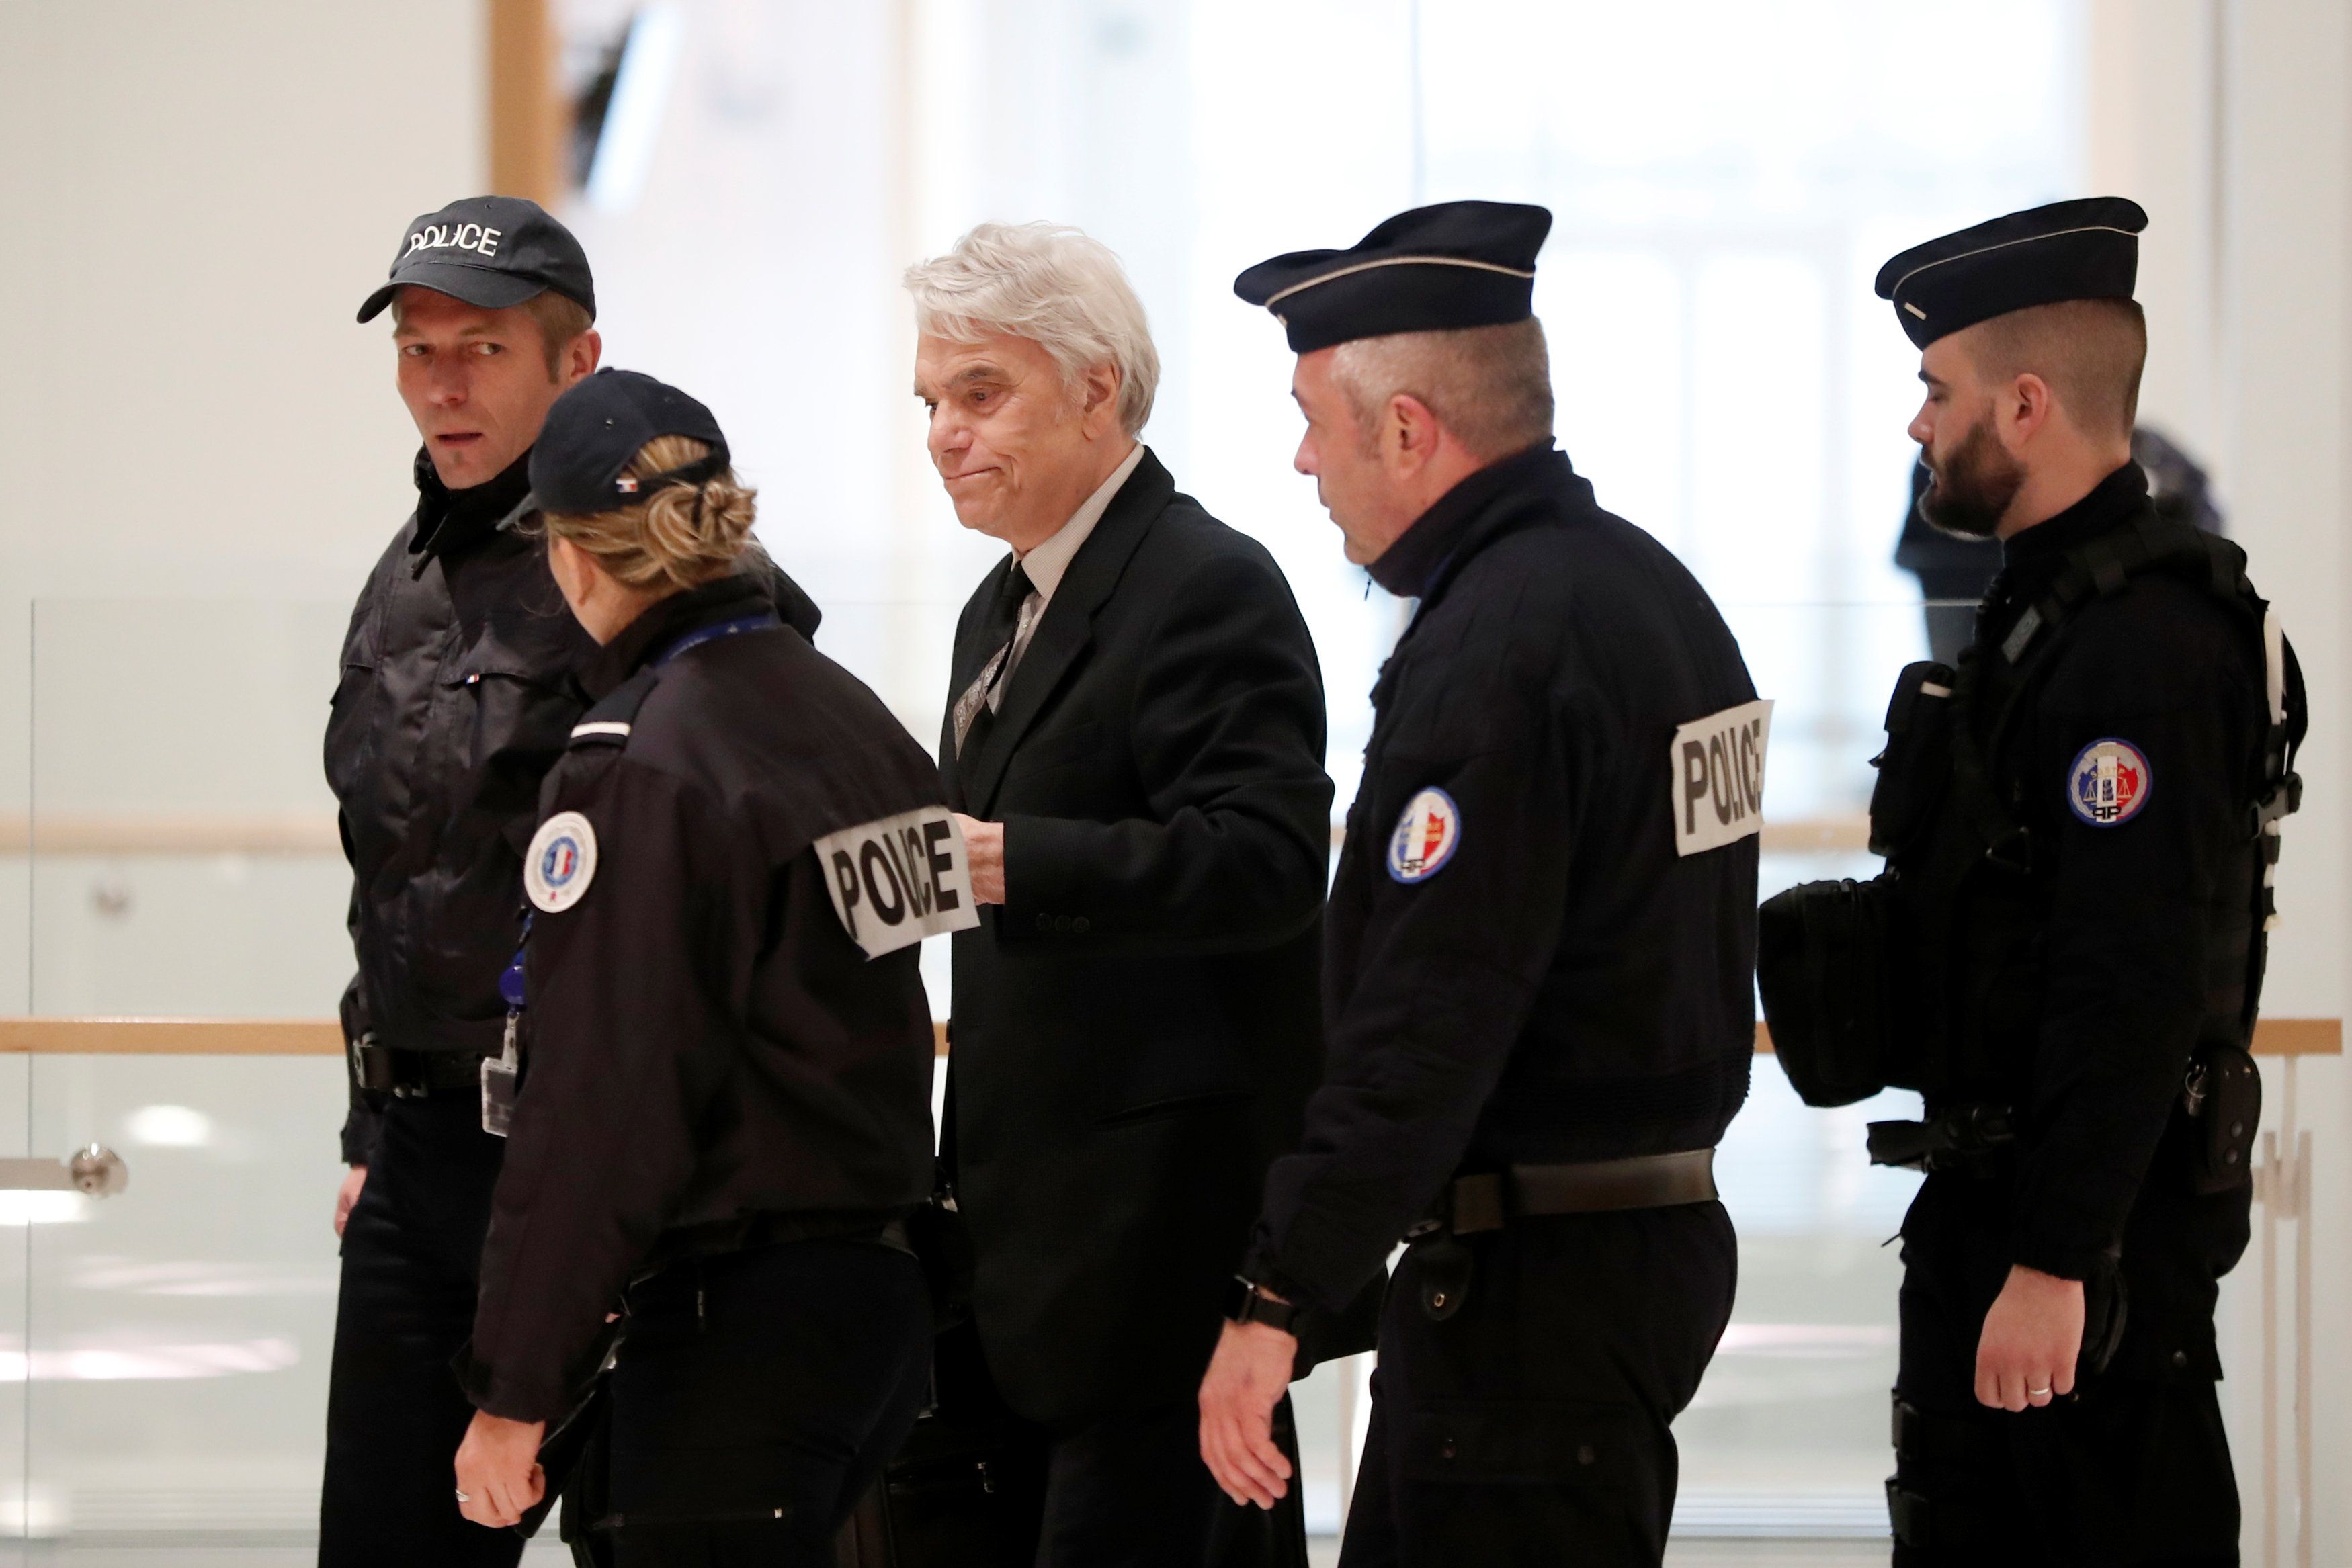 El polémico empresario, dirigente deportivo y político francés Bernard Tapie, escoltado por la policía, llega a una audiencia judicial a raíz de una millonaria asignación de fondos a su favor que en 2008 dispuso Lagarde